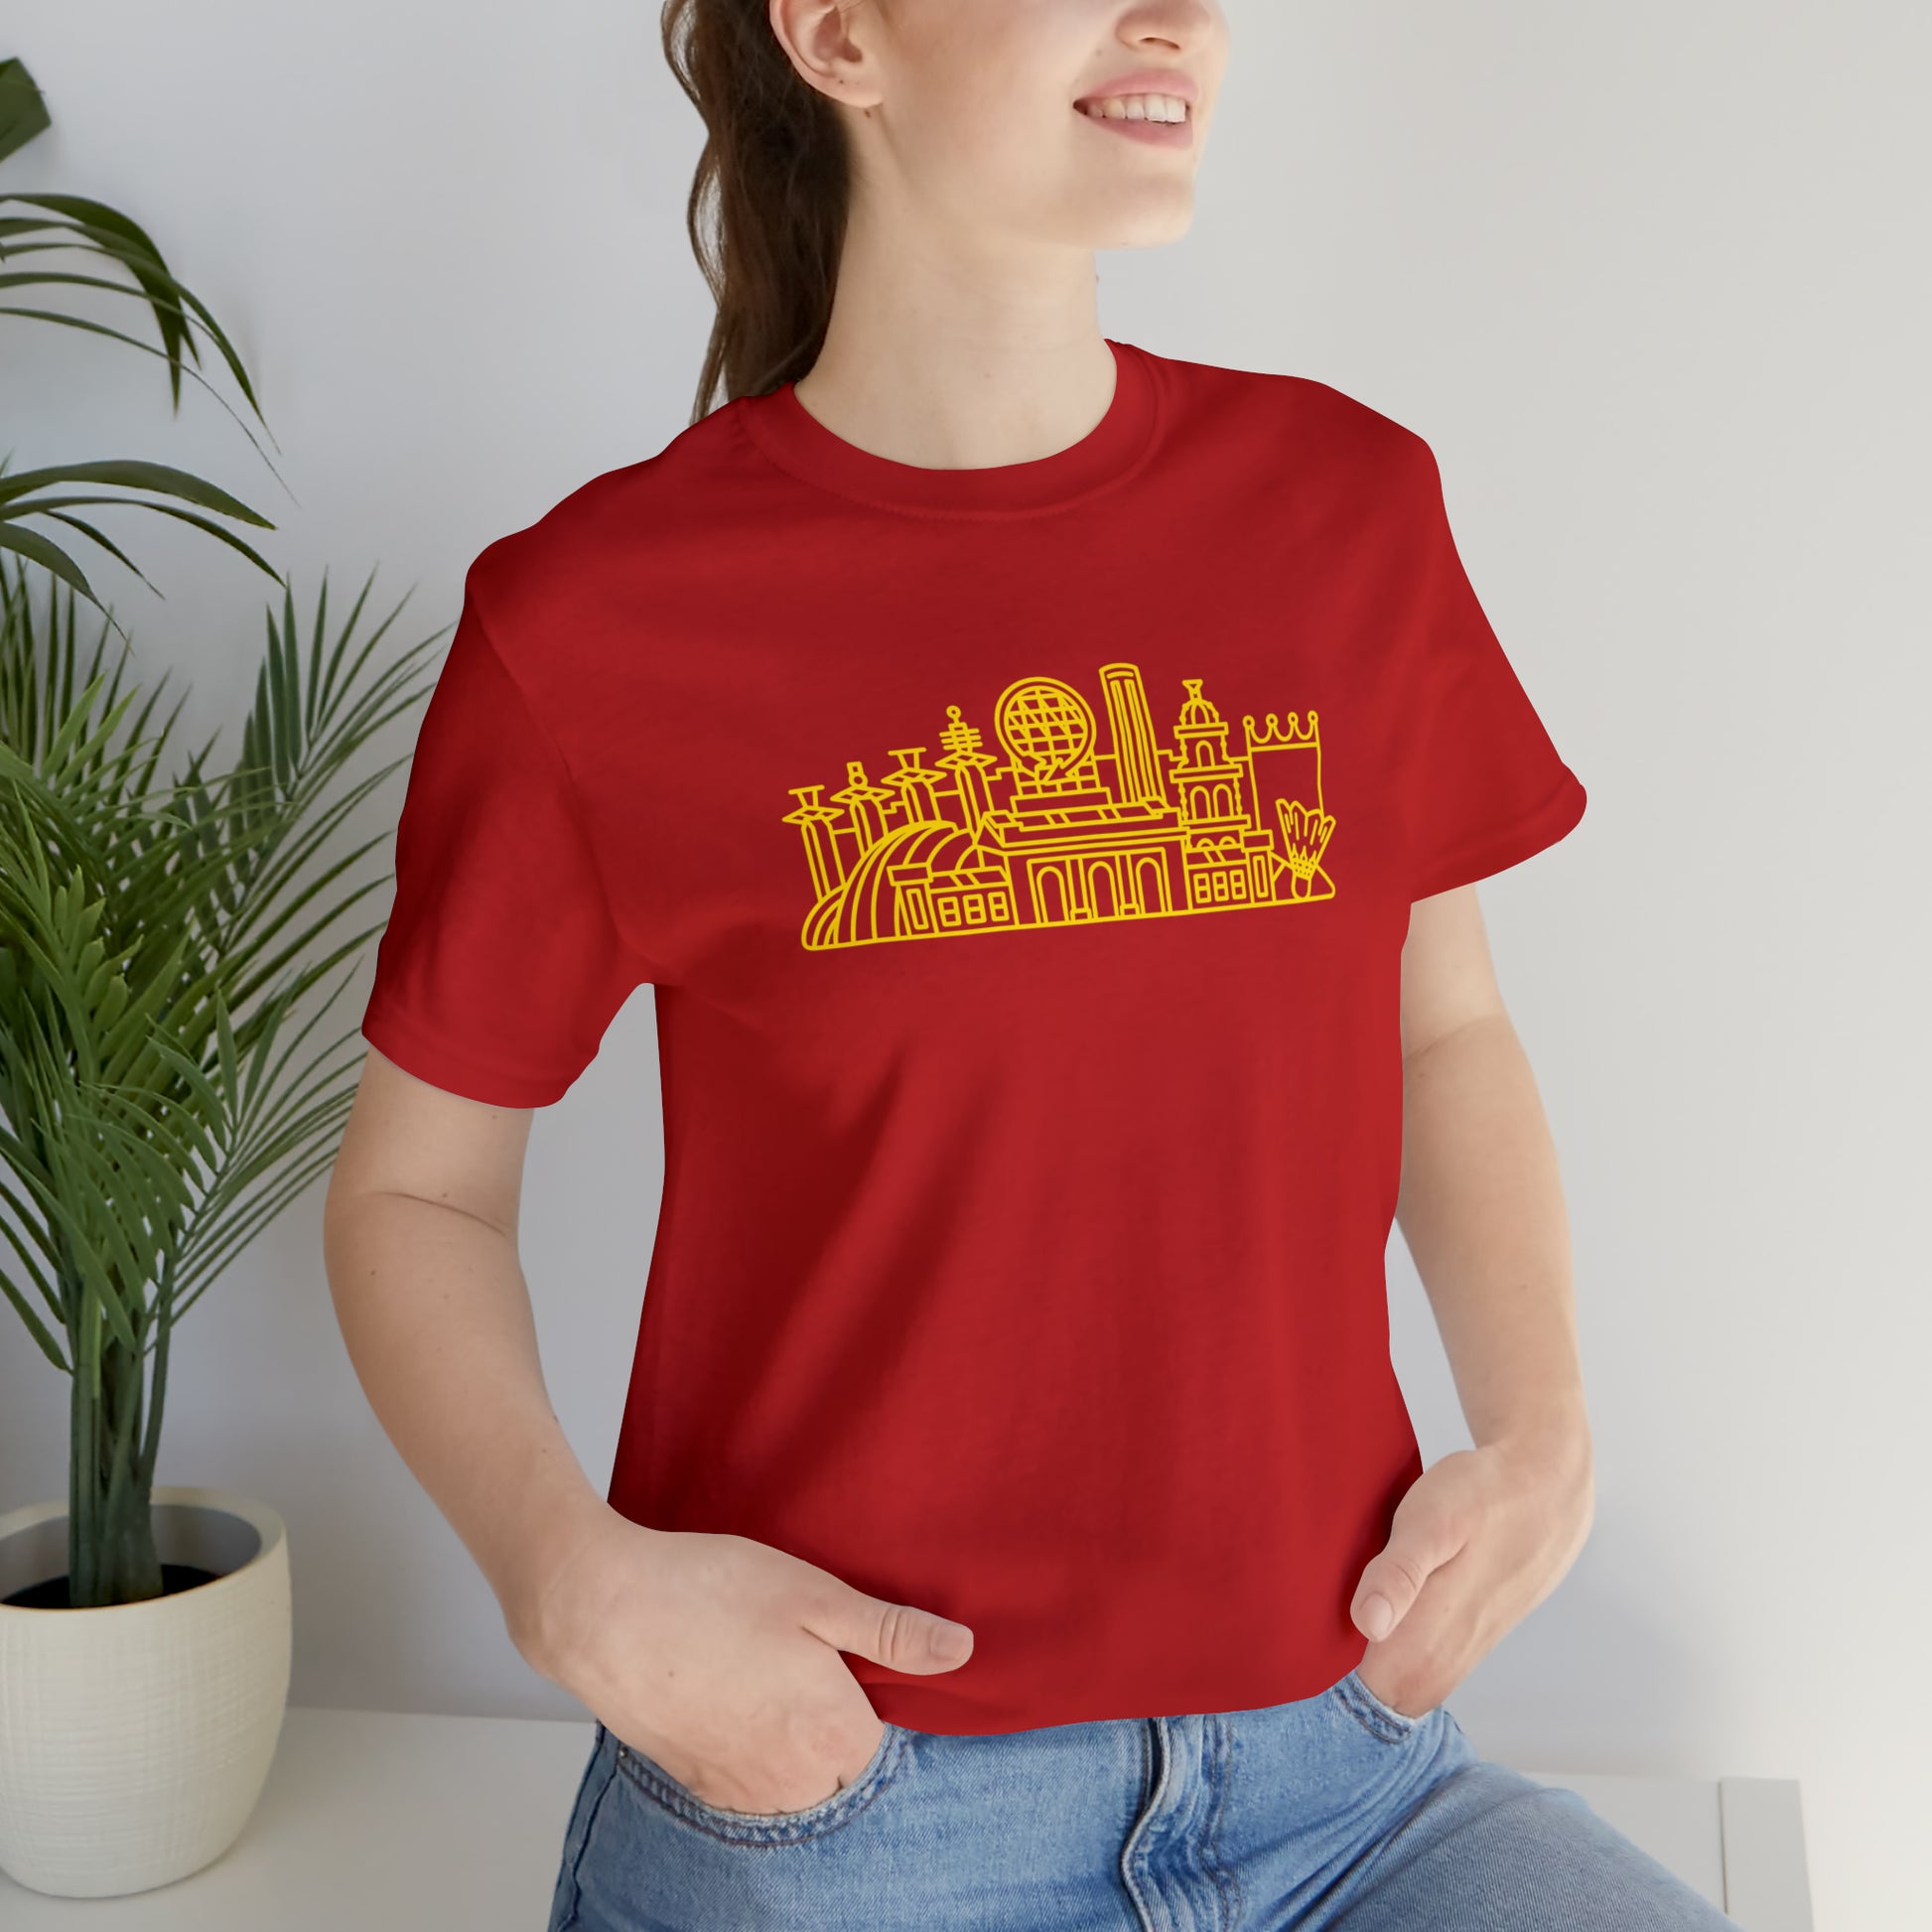 America Needs Kansas City T-Shirt – RAYGUN